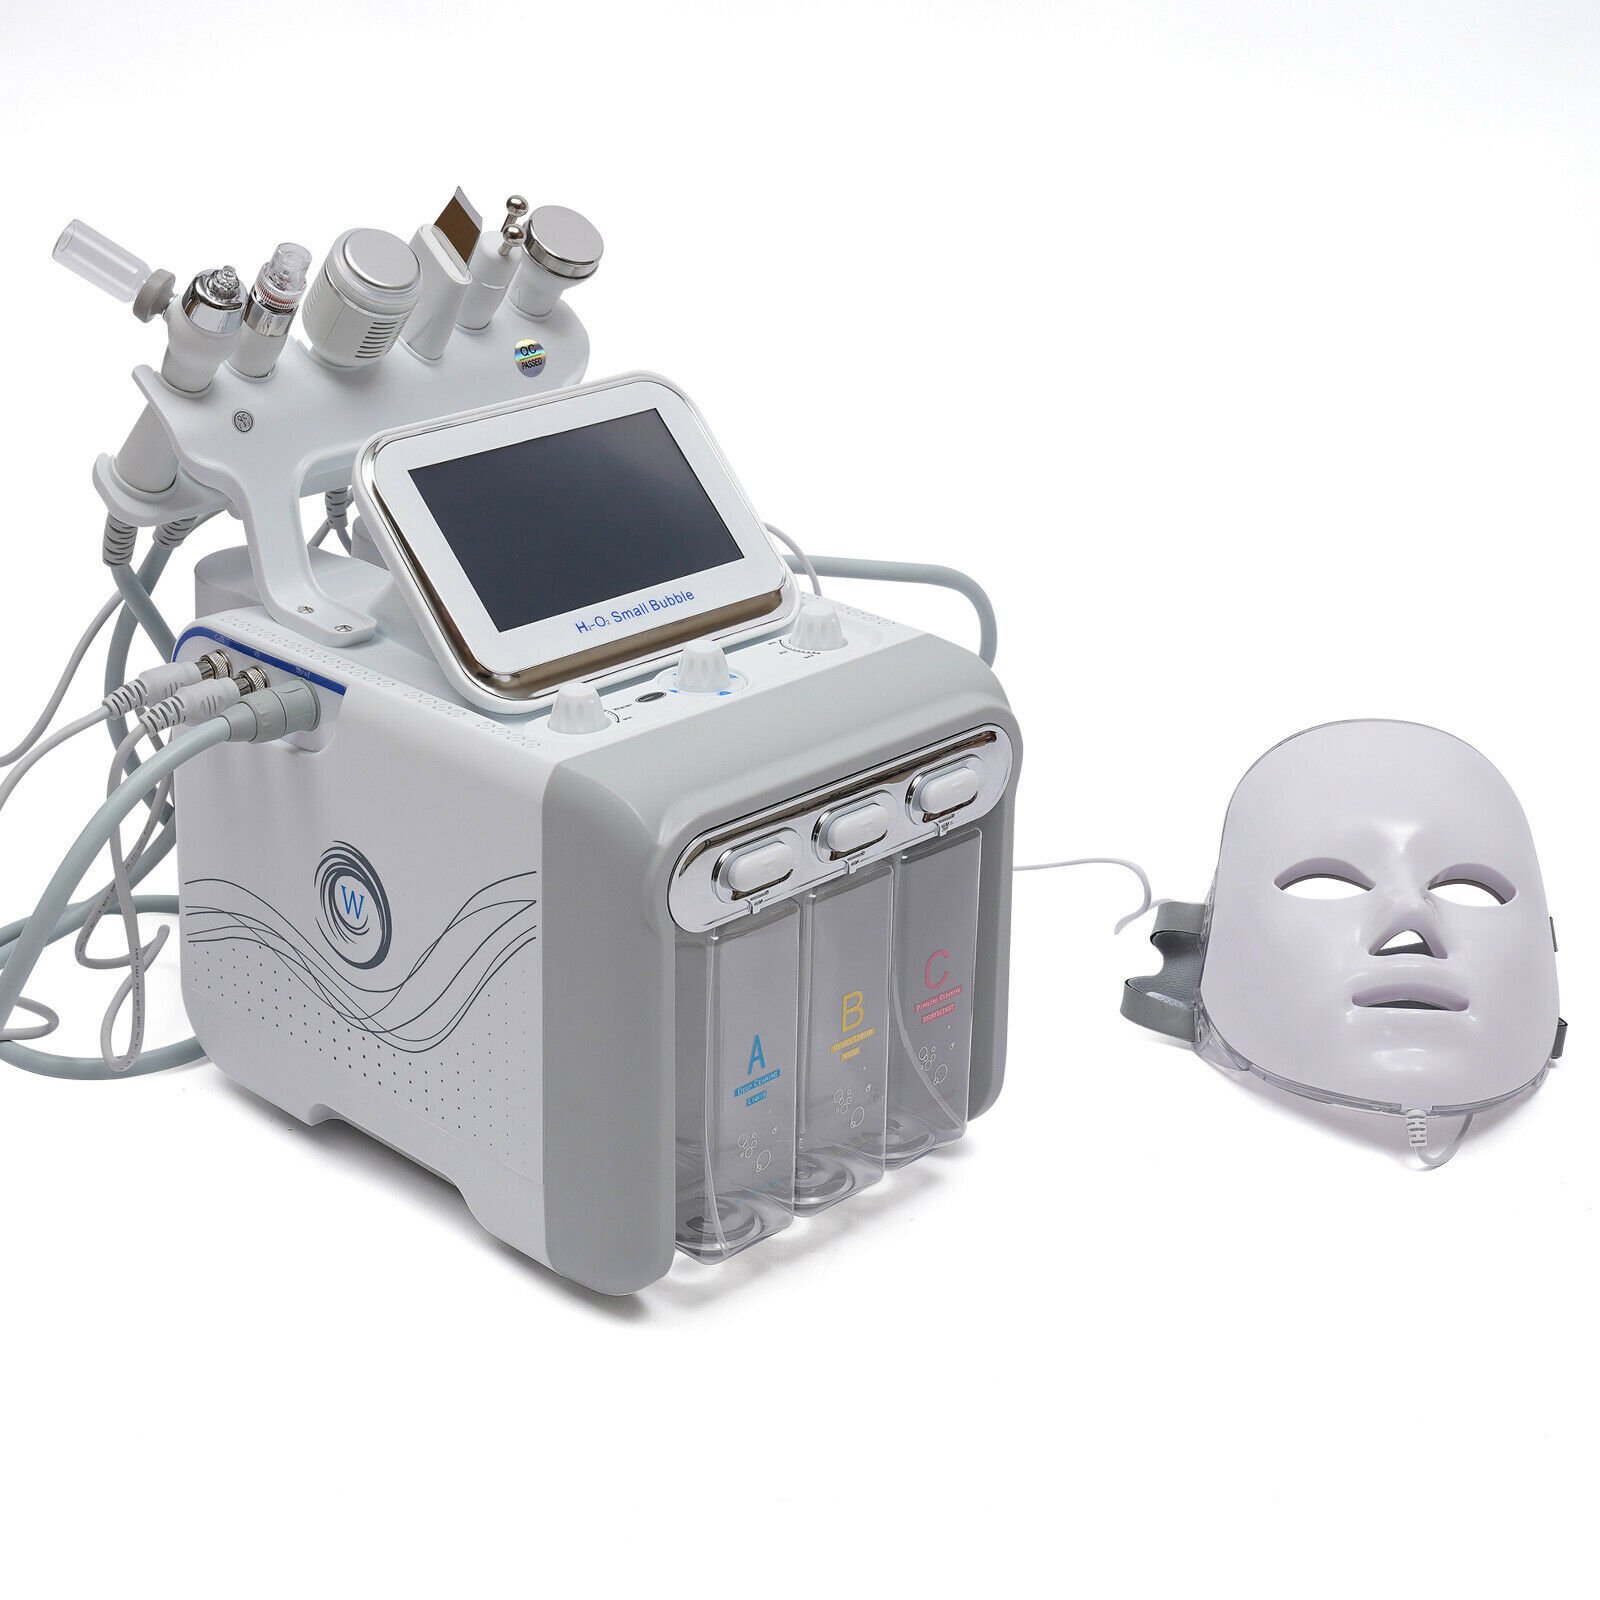 دستگاه هیدروفیشیال 7 کاره با ماسک ال ای دی